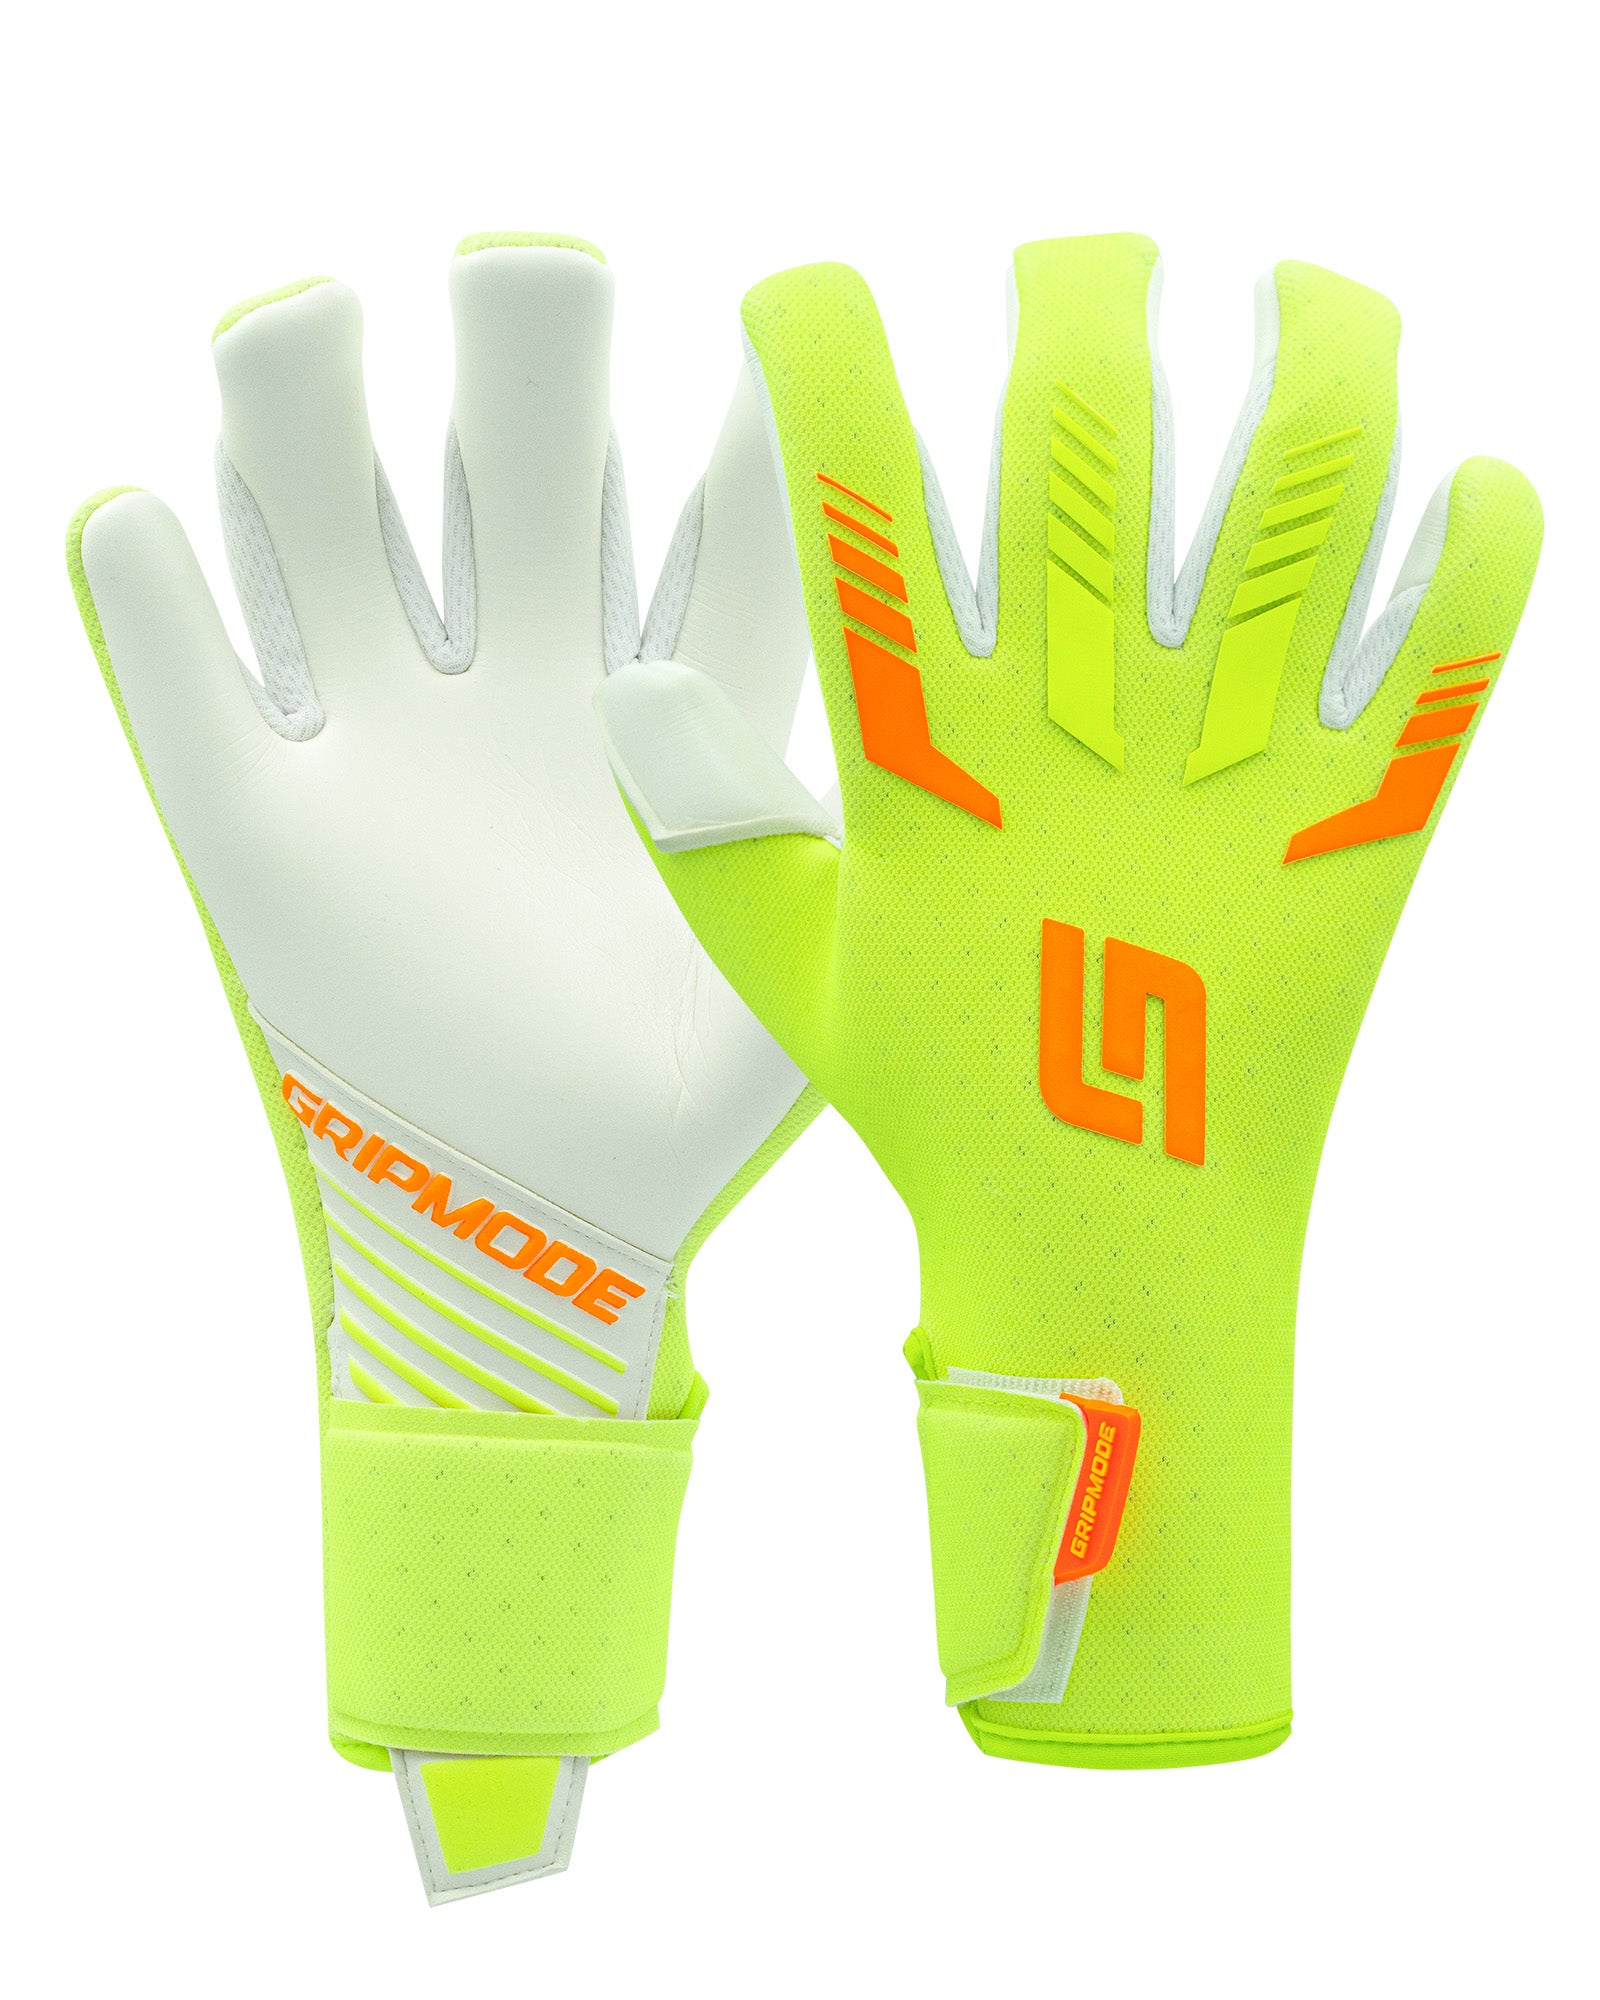 Gripmode Venom Hybrid 2.0 Goalkeeper gloves for soccer and football